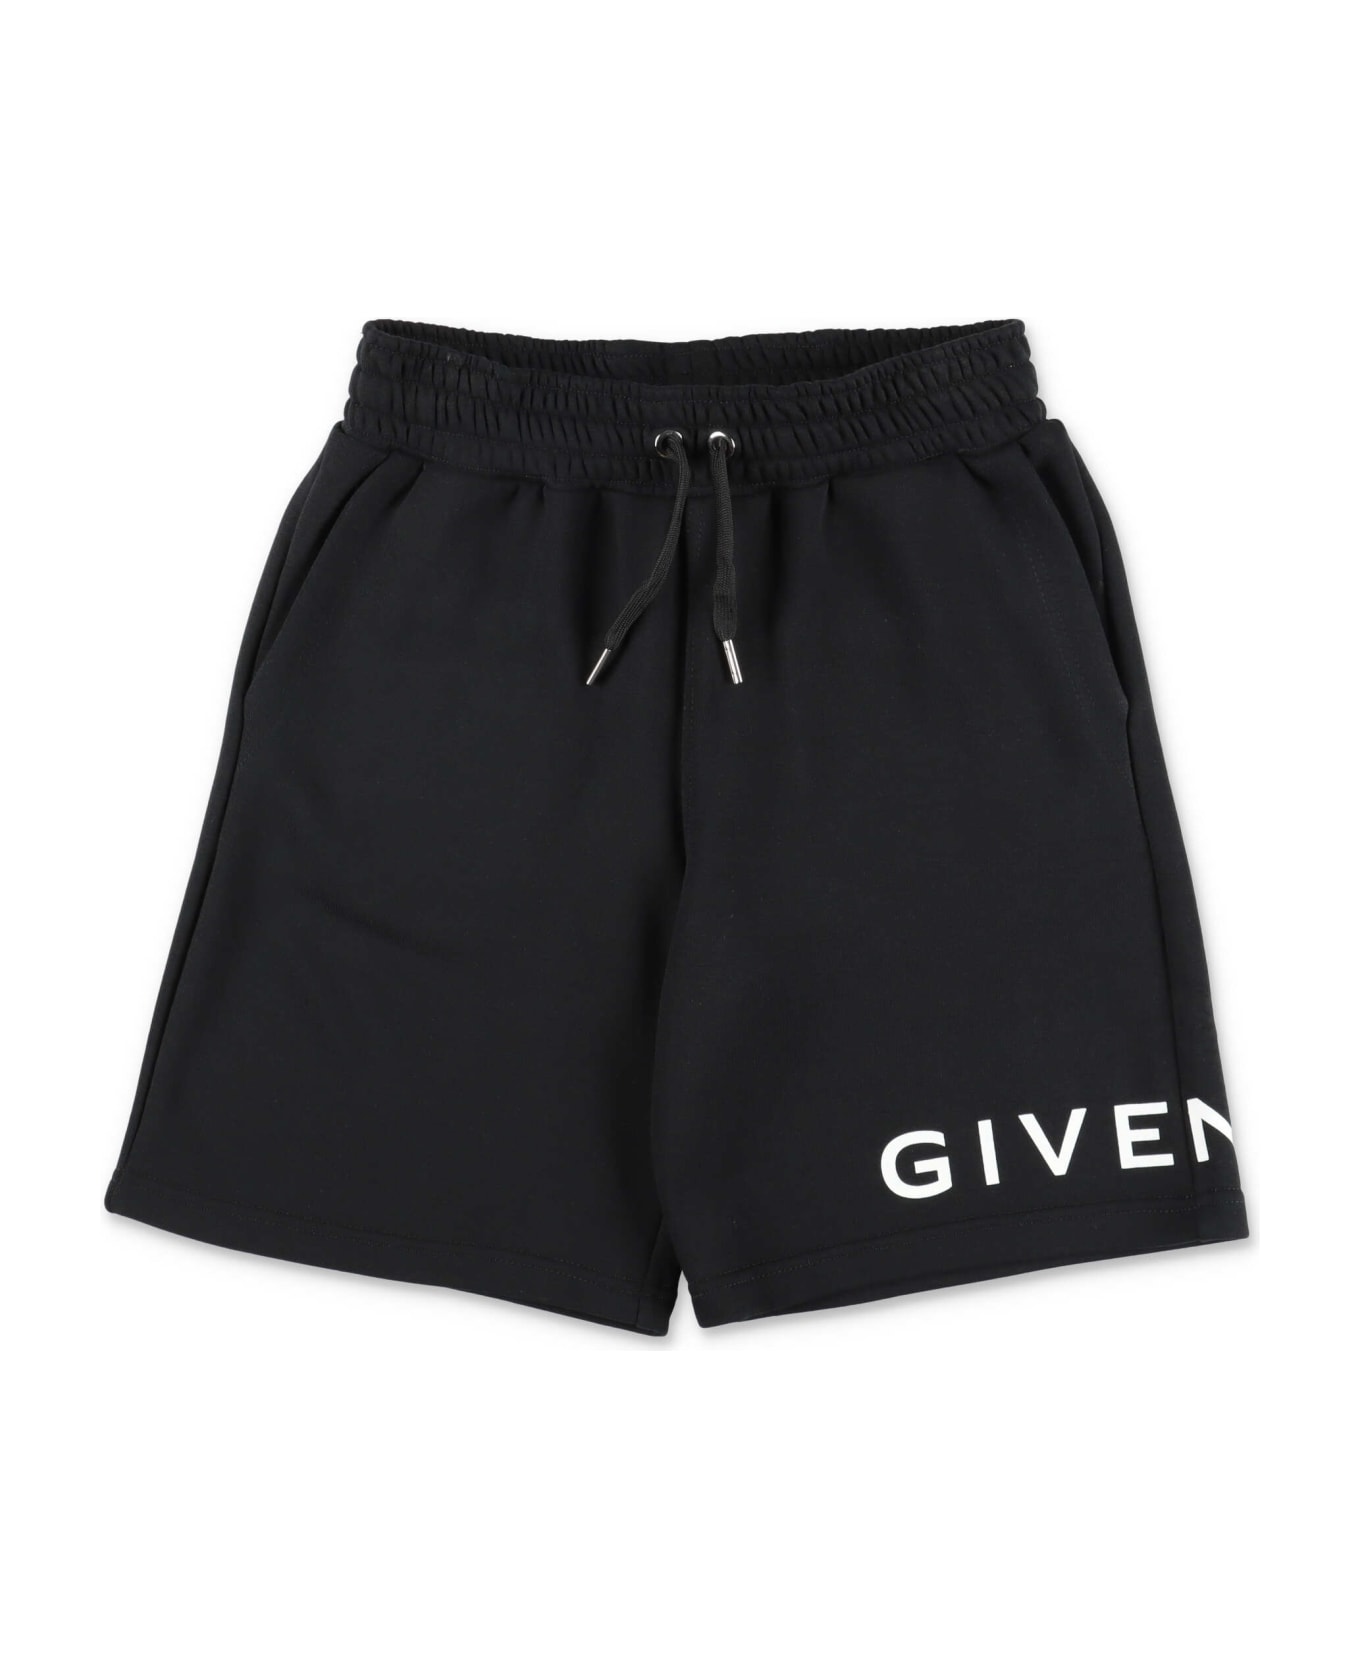 Givenchy Shorts Nero In Felpa Di Cotone Bambino - Nero